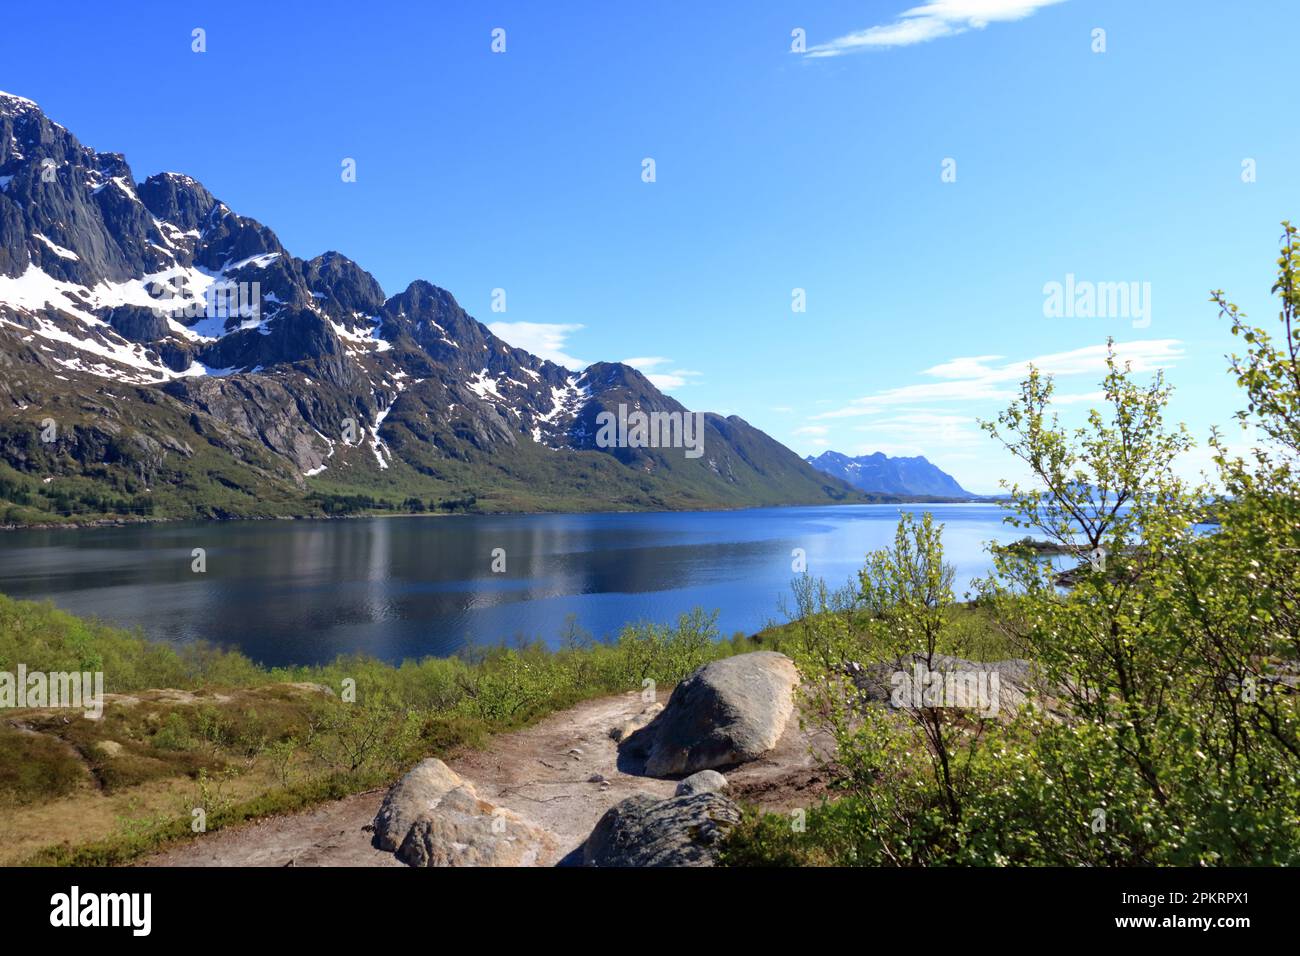 Die Fjord-Landschaft von Austnesfjorden in der Sildpollen-Bucht, Lofoten-Inseln Austvagoya, Norwegen Stockfoto